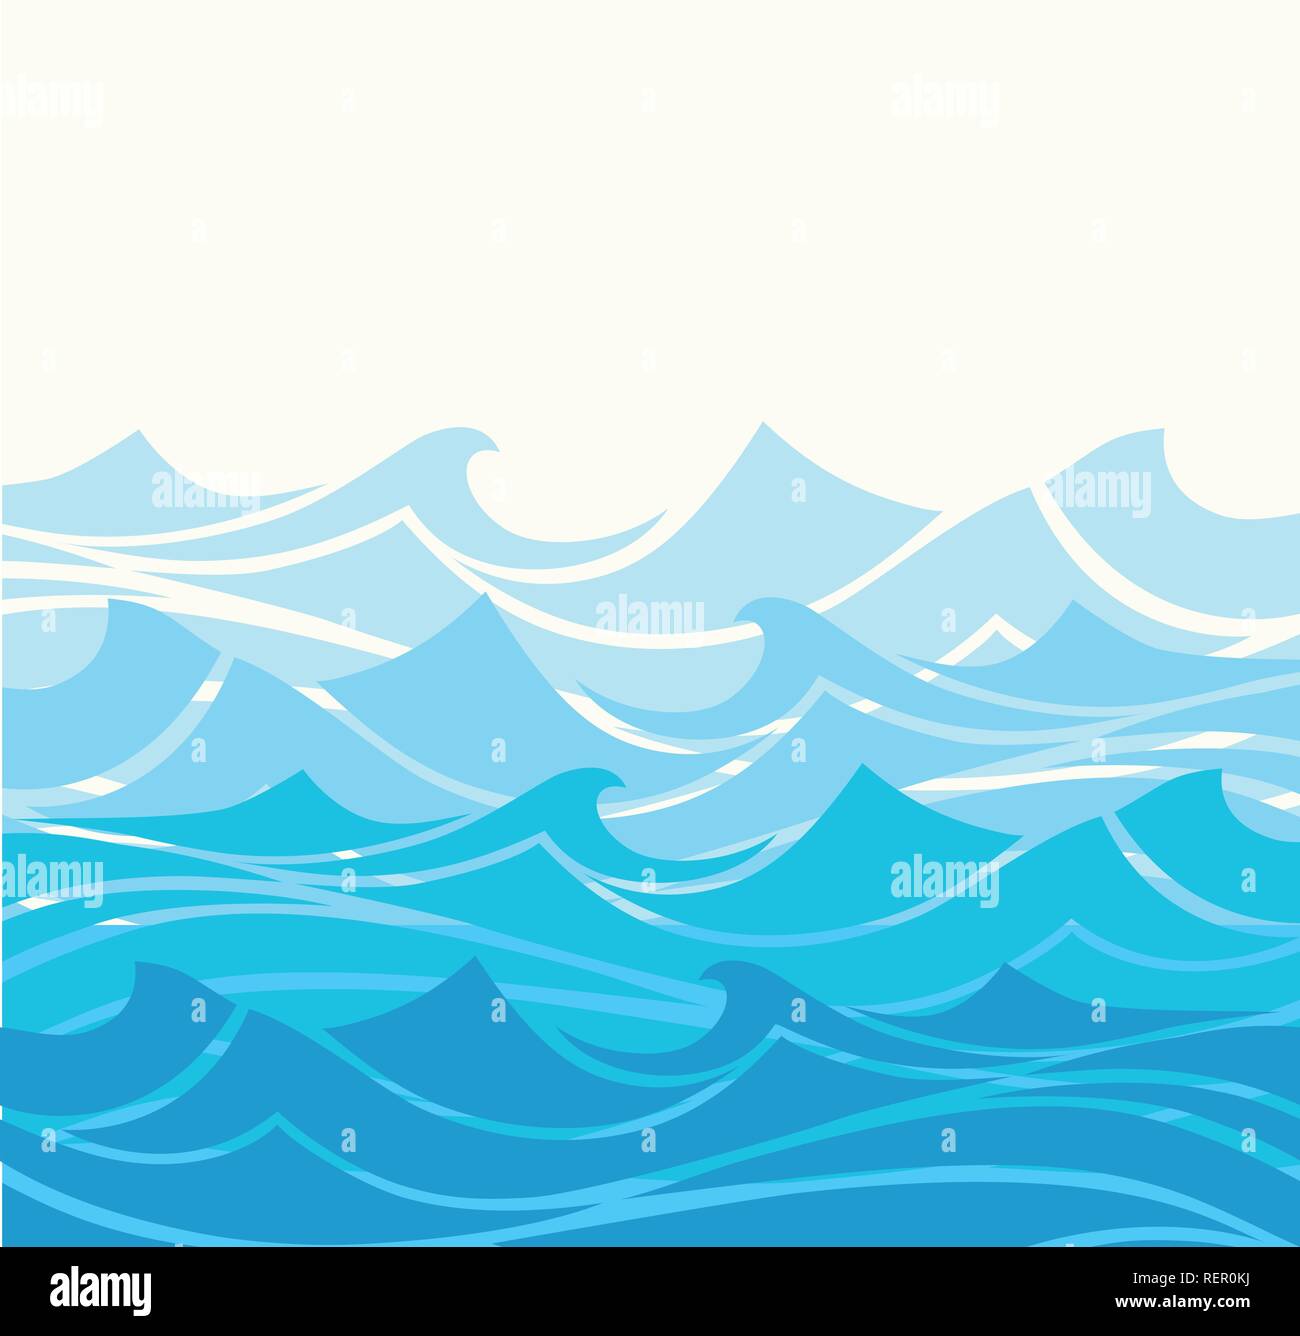 Las olas del mar Imágenes vectoriales de stock - Alamy